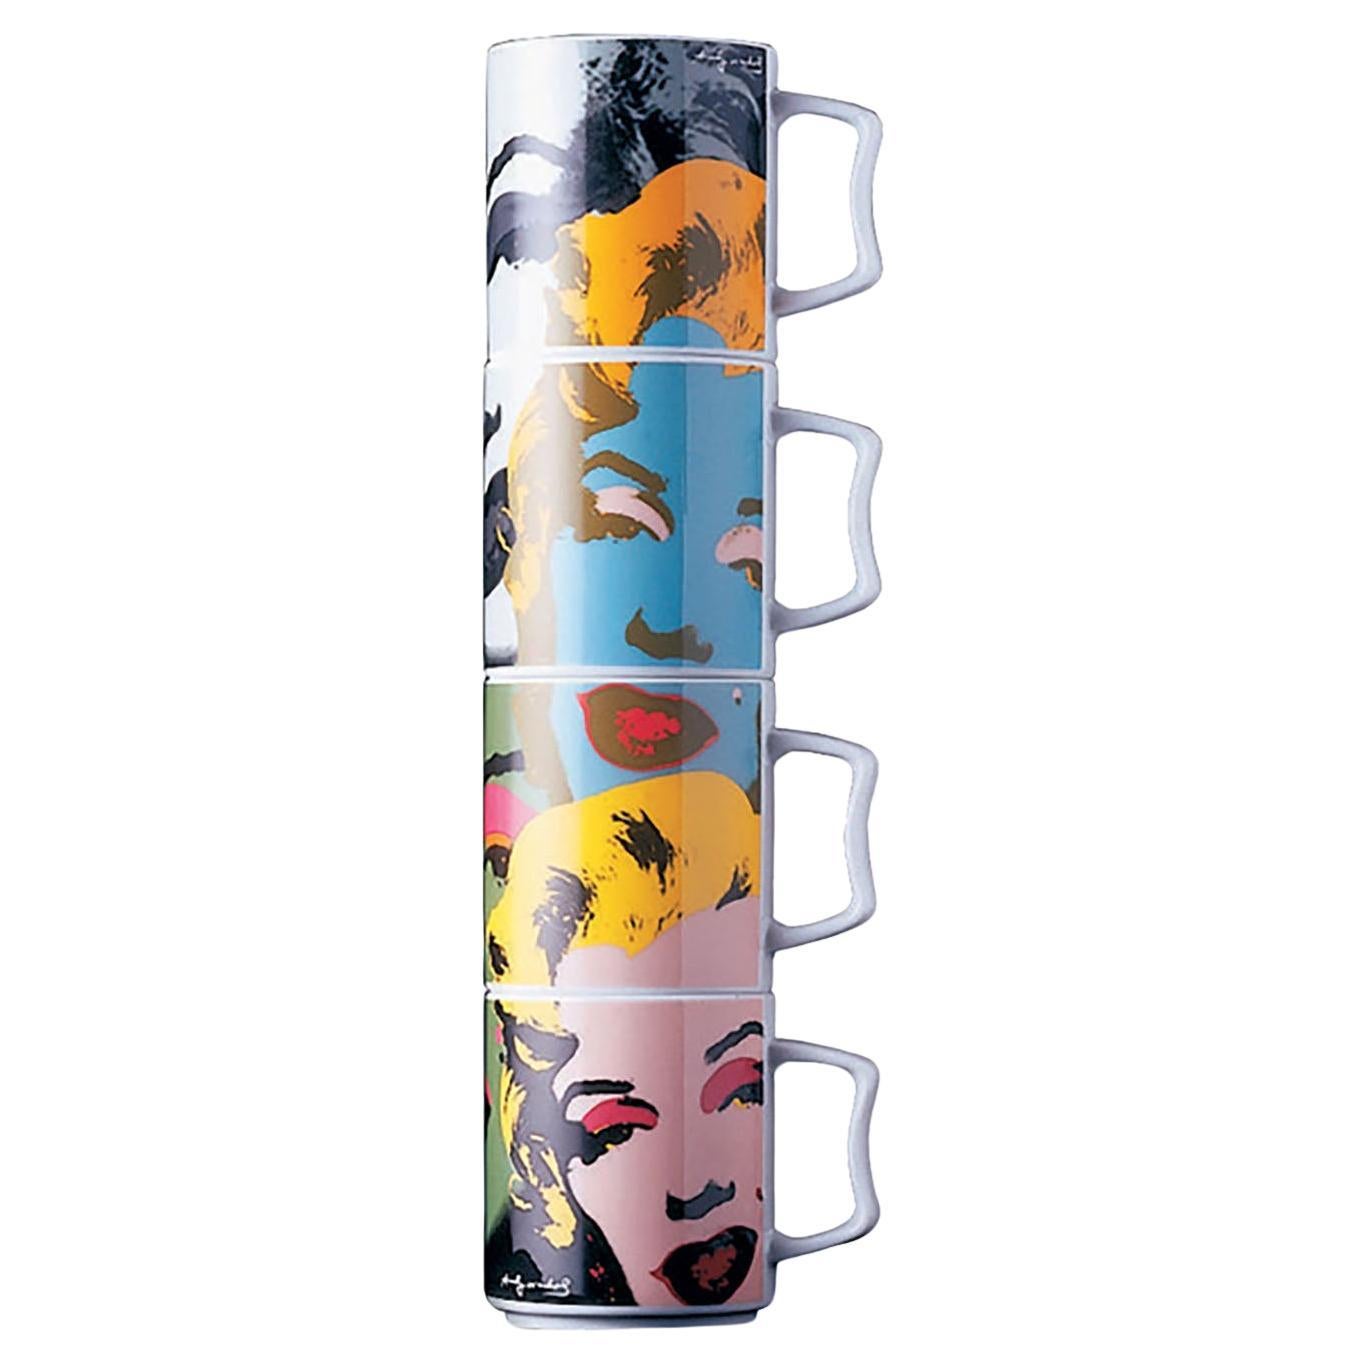 Andy Warhol Marilyn Monroe Rosenthal Studio Line Stacking Mug Set, FREE SHIPPING